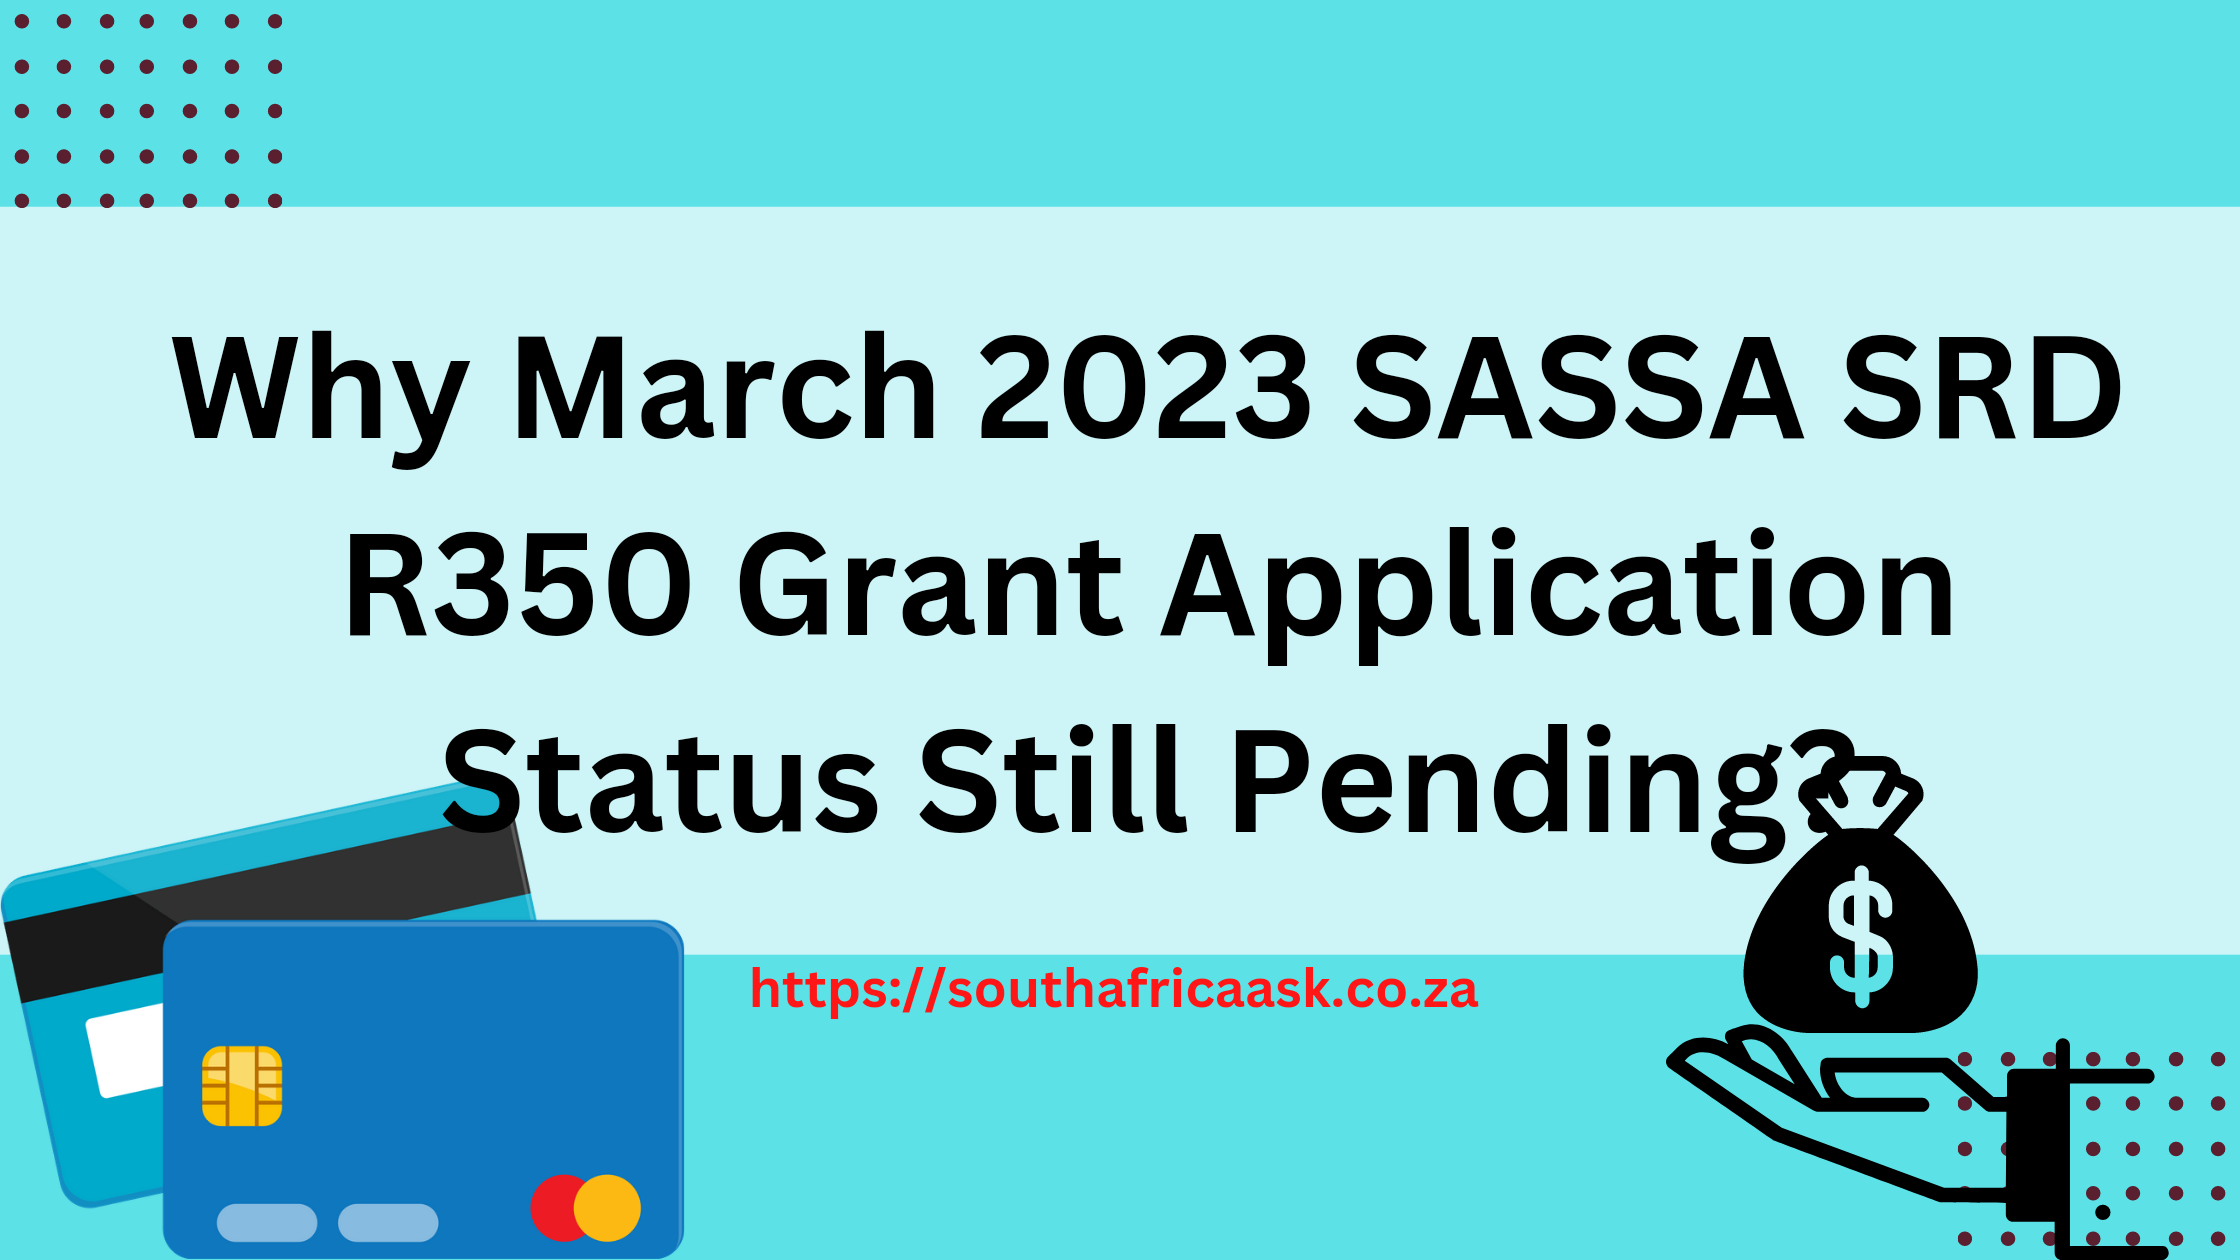 Why March 2023 SASSA SRD R350 Grant Application Status Still Pending?